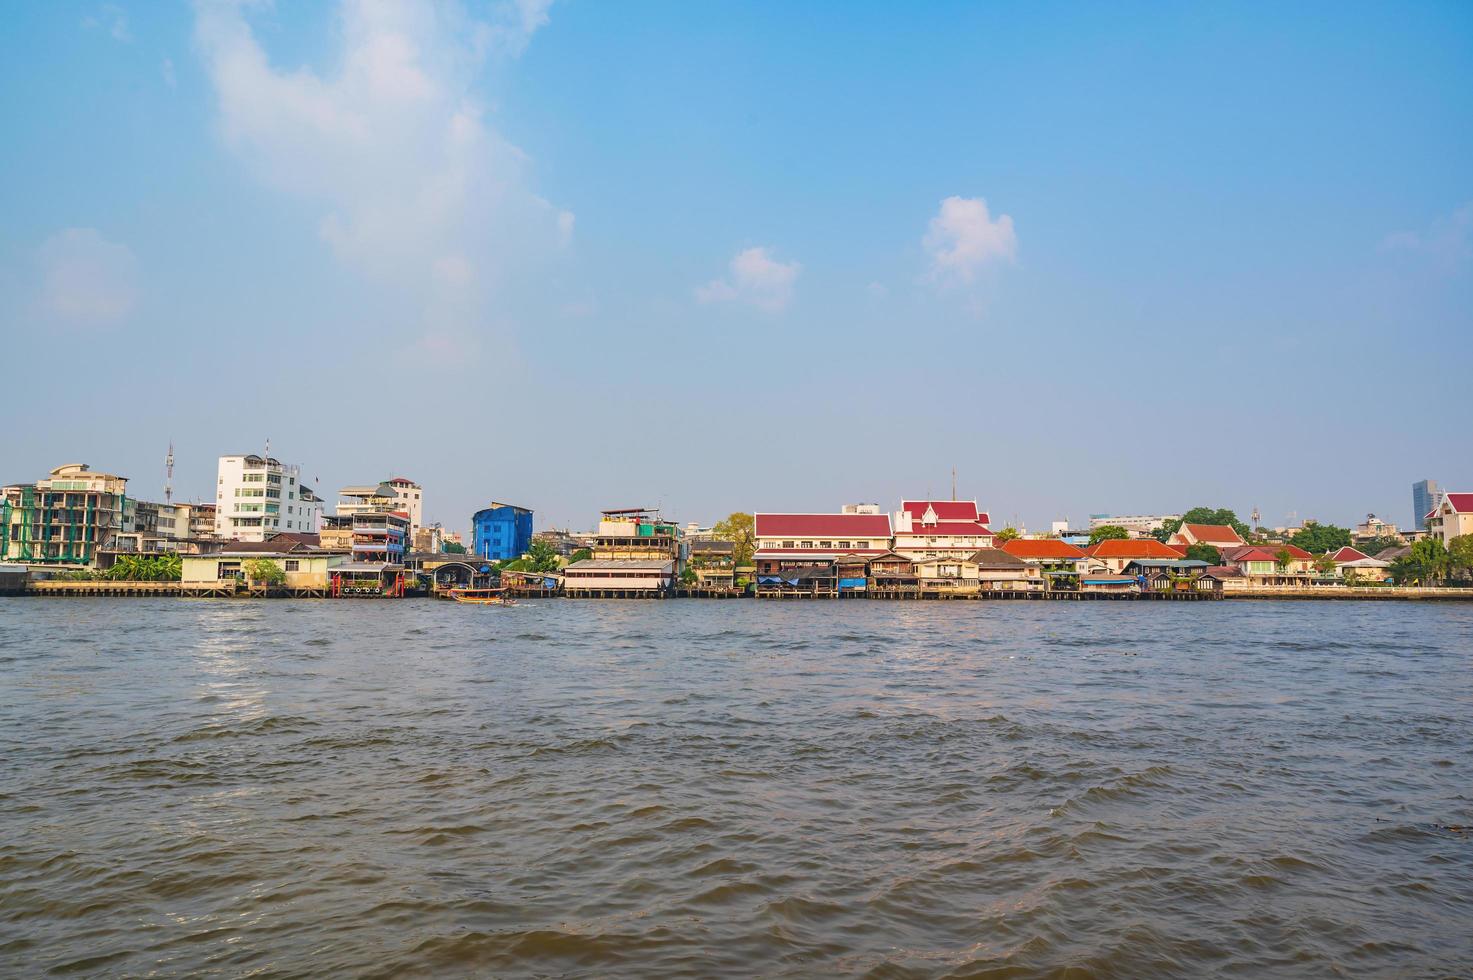 stadtbild von bangkok von lhong 1919.lhong 1919 ist eine touristenattraktion am westufer des chao phraya flusses in thonburi von bangkok foto